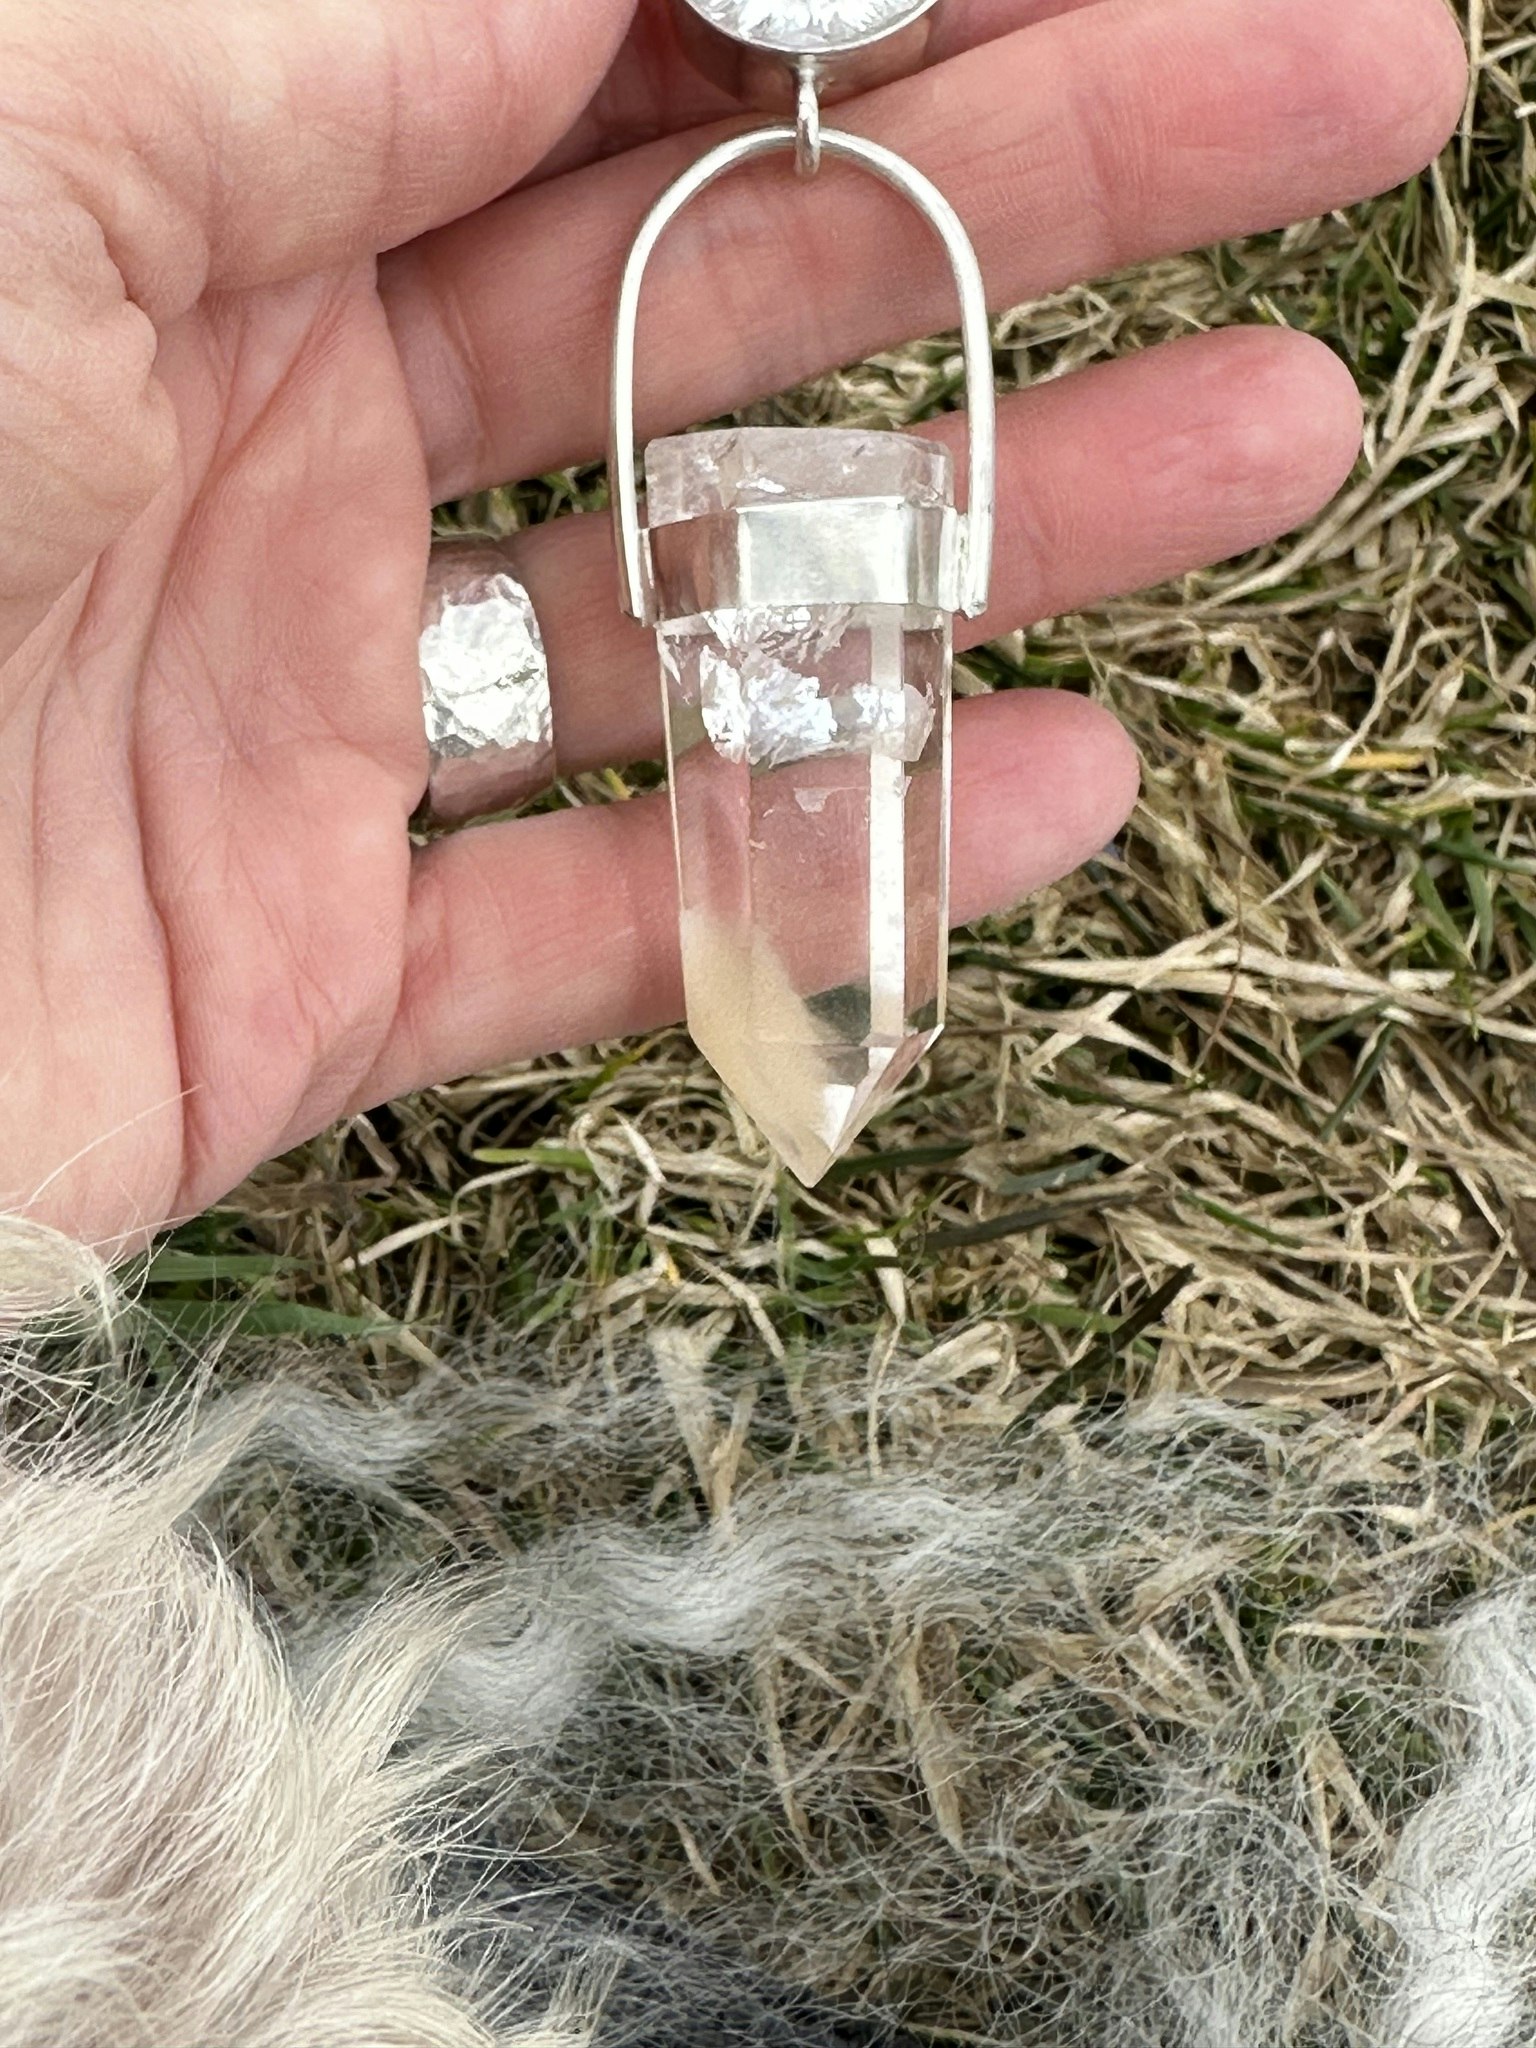 Clear quartz crystal with Angel Feather quartz